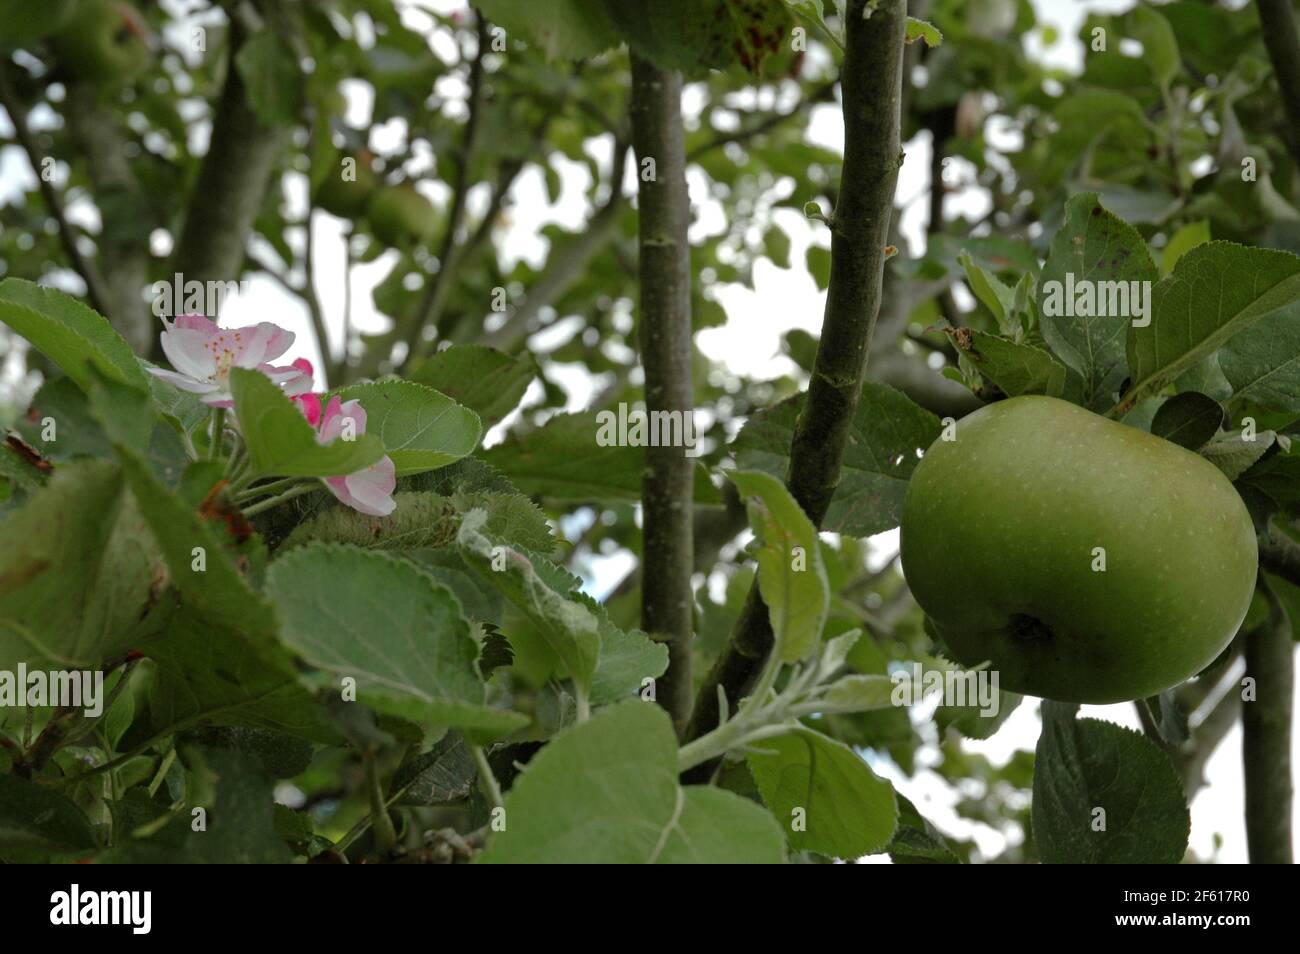 La plantule de Bramley, (Malus domestica) montrant à la fois des fruits et des fleurs en phase de maturation. Septembre, West Sussex Coastal Plain, Chichester Plain, Angleterre, Banque D'Images